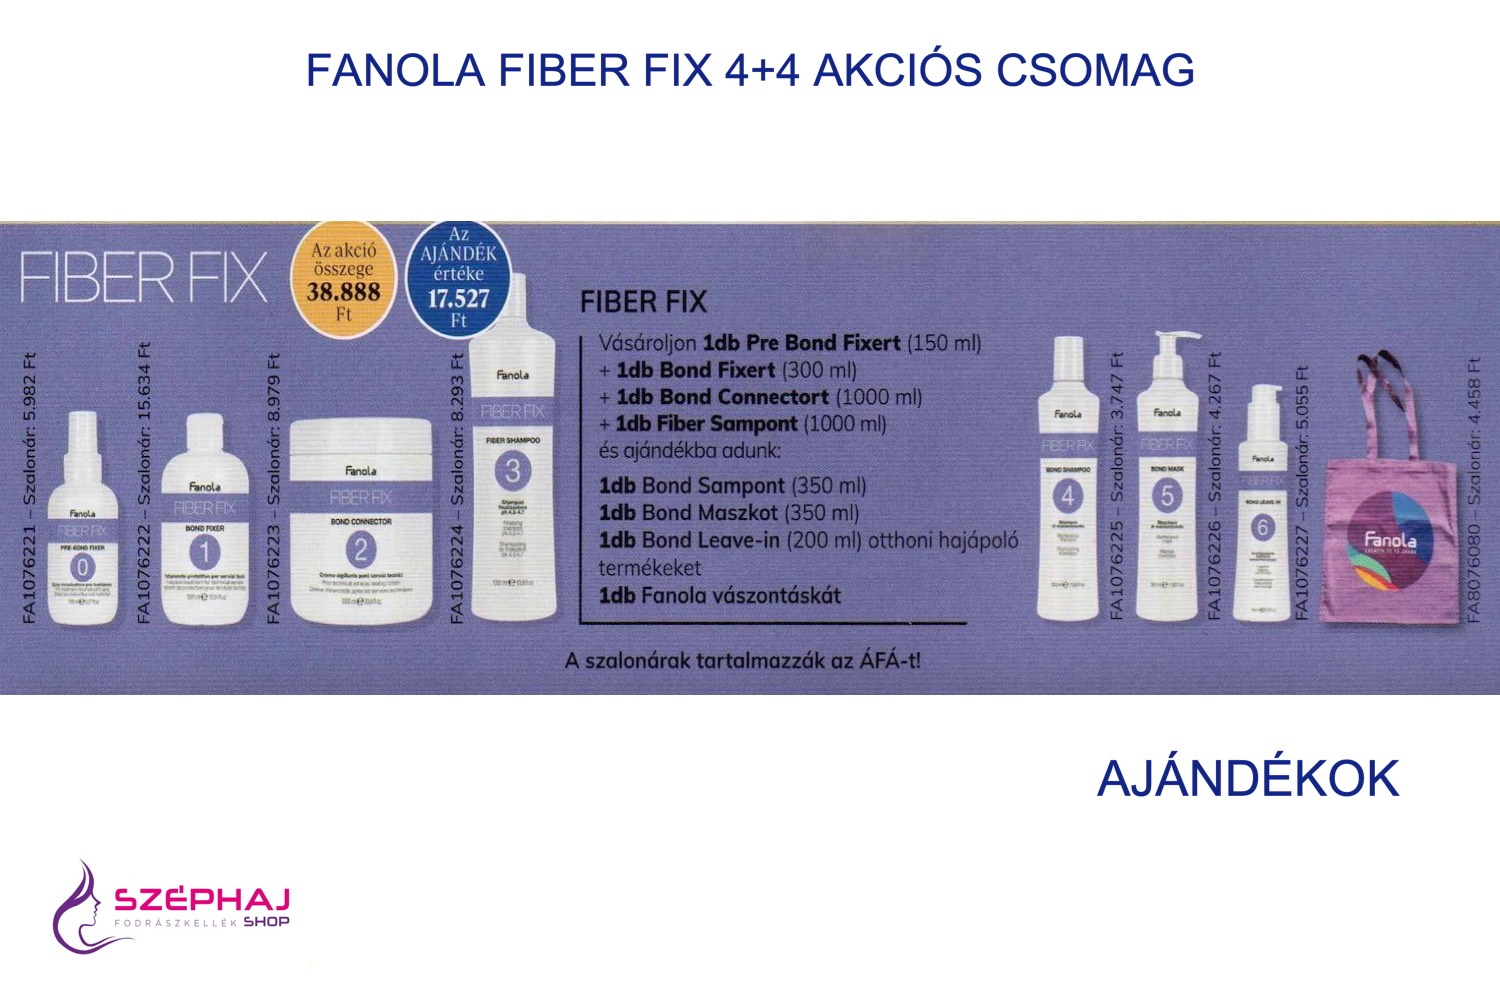 FANOLA Fiber Fix 4+4 AKCIÓS CSOMAG